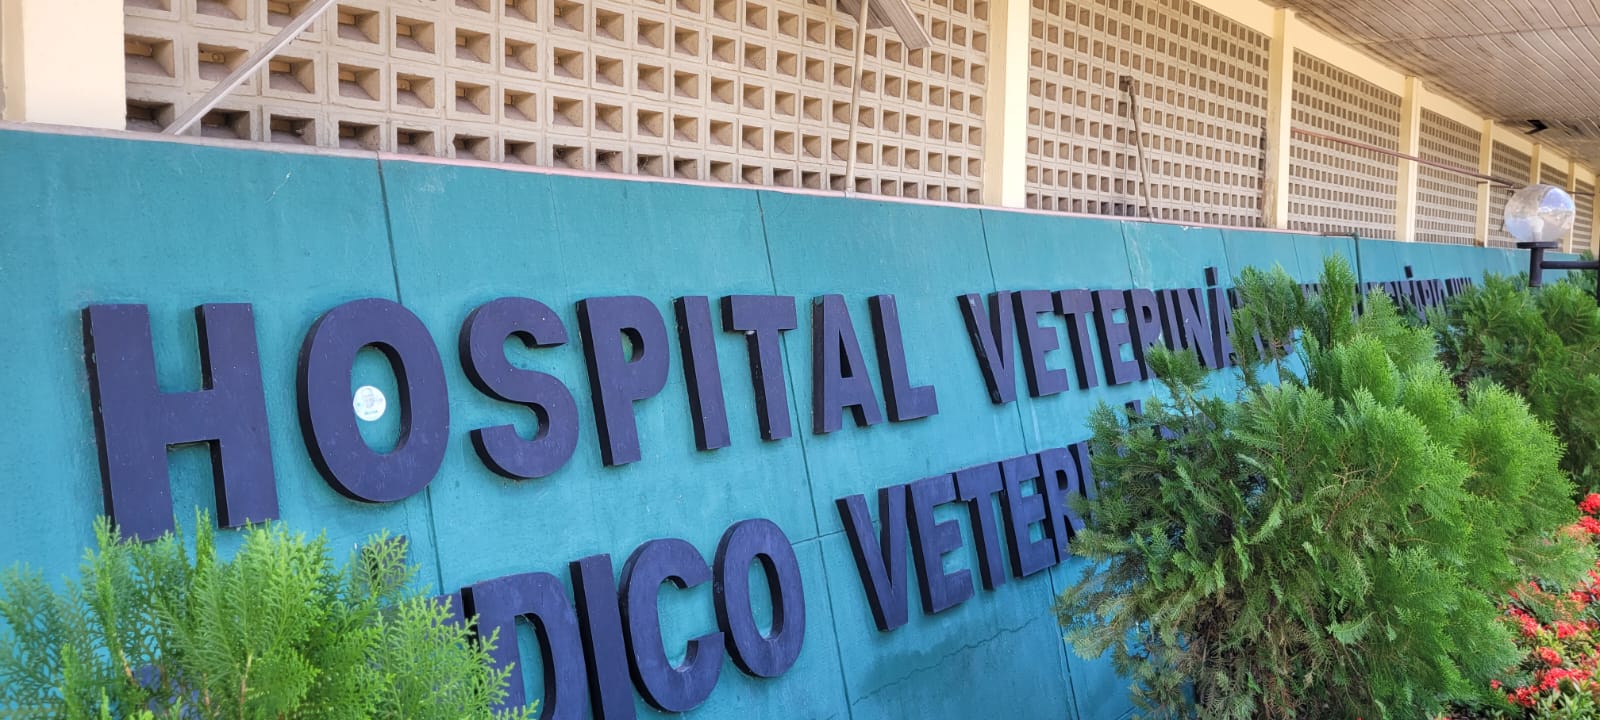 Agendamento de consultas é suspenso no Hospital Veterinário da UFPI durante greve